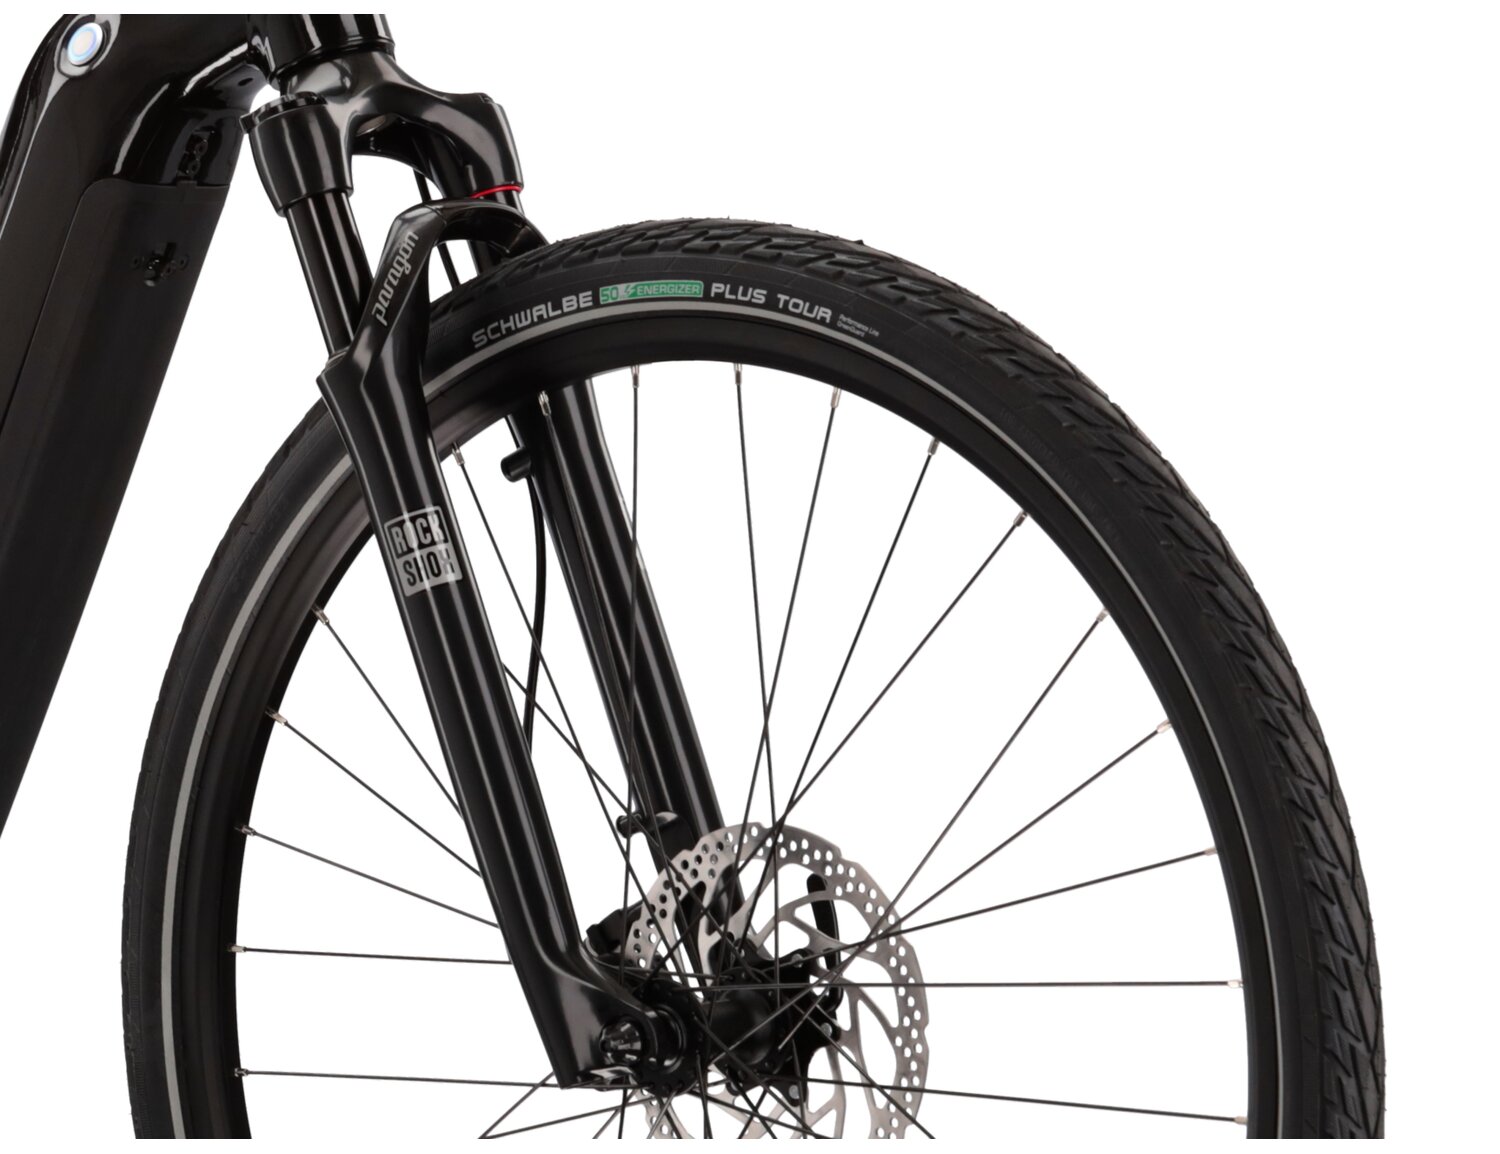 Aluminowa rama, amortyzowany widelec Rock Shox o skoku 65 mm oraz opony w elektrycznym rowerze crossowym KROSS Evado Hybrid 6.0 630 Wh